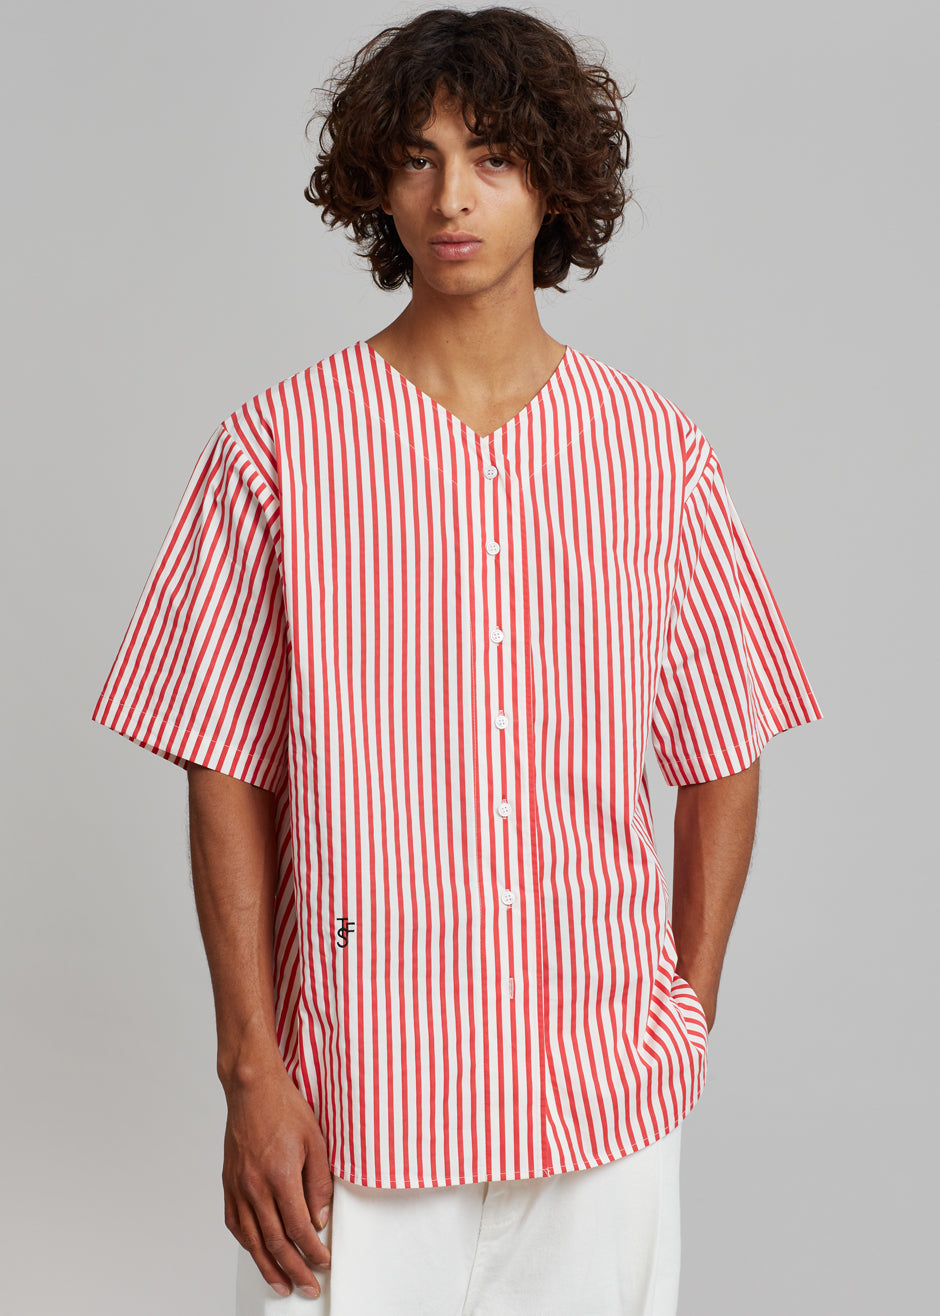 Tom Baseball Shirt - Red Stripe - 5